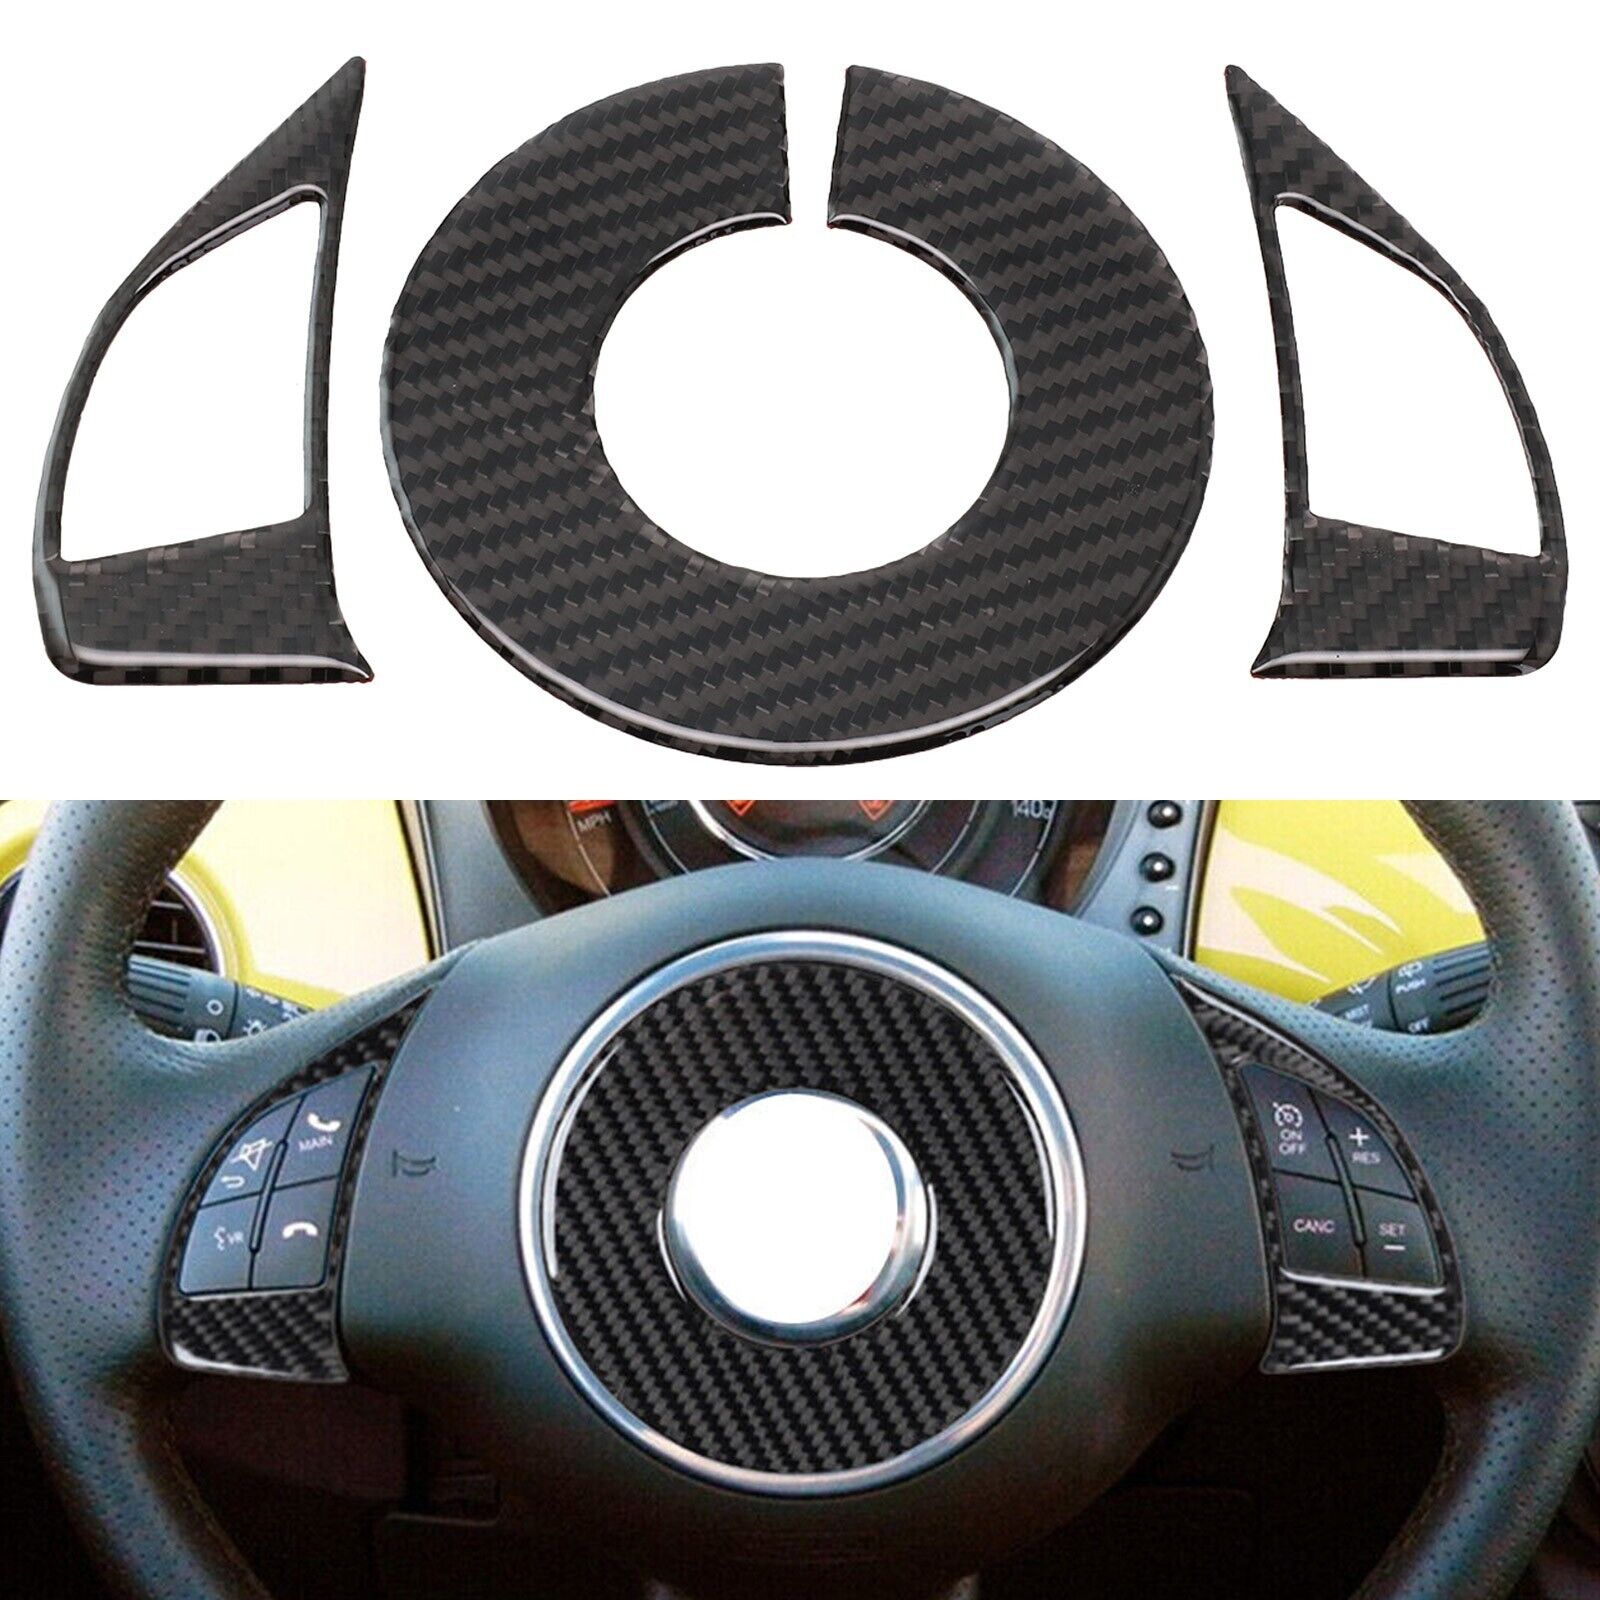 3Pcs Carbon Fiber Interior Steering Wheel Accent Cover Trim For Fiat 500 2012-15